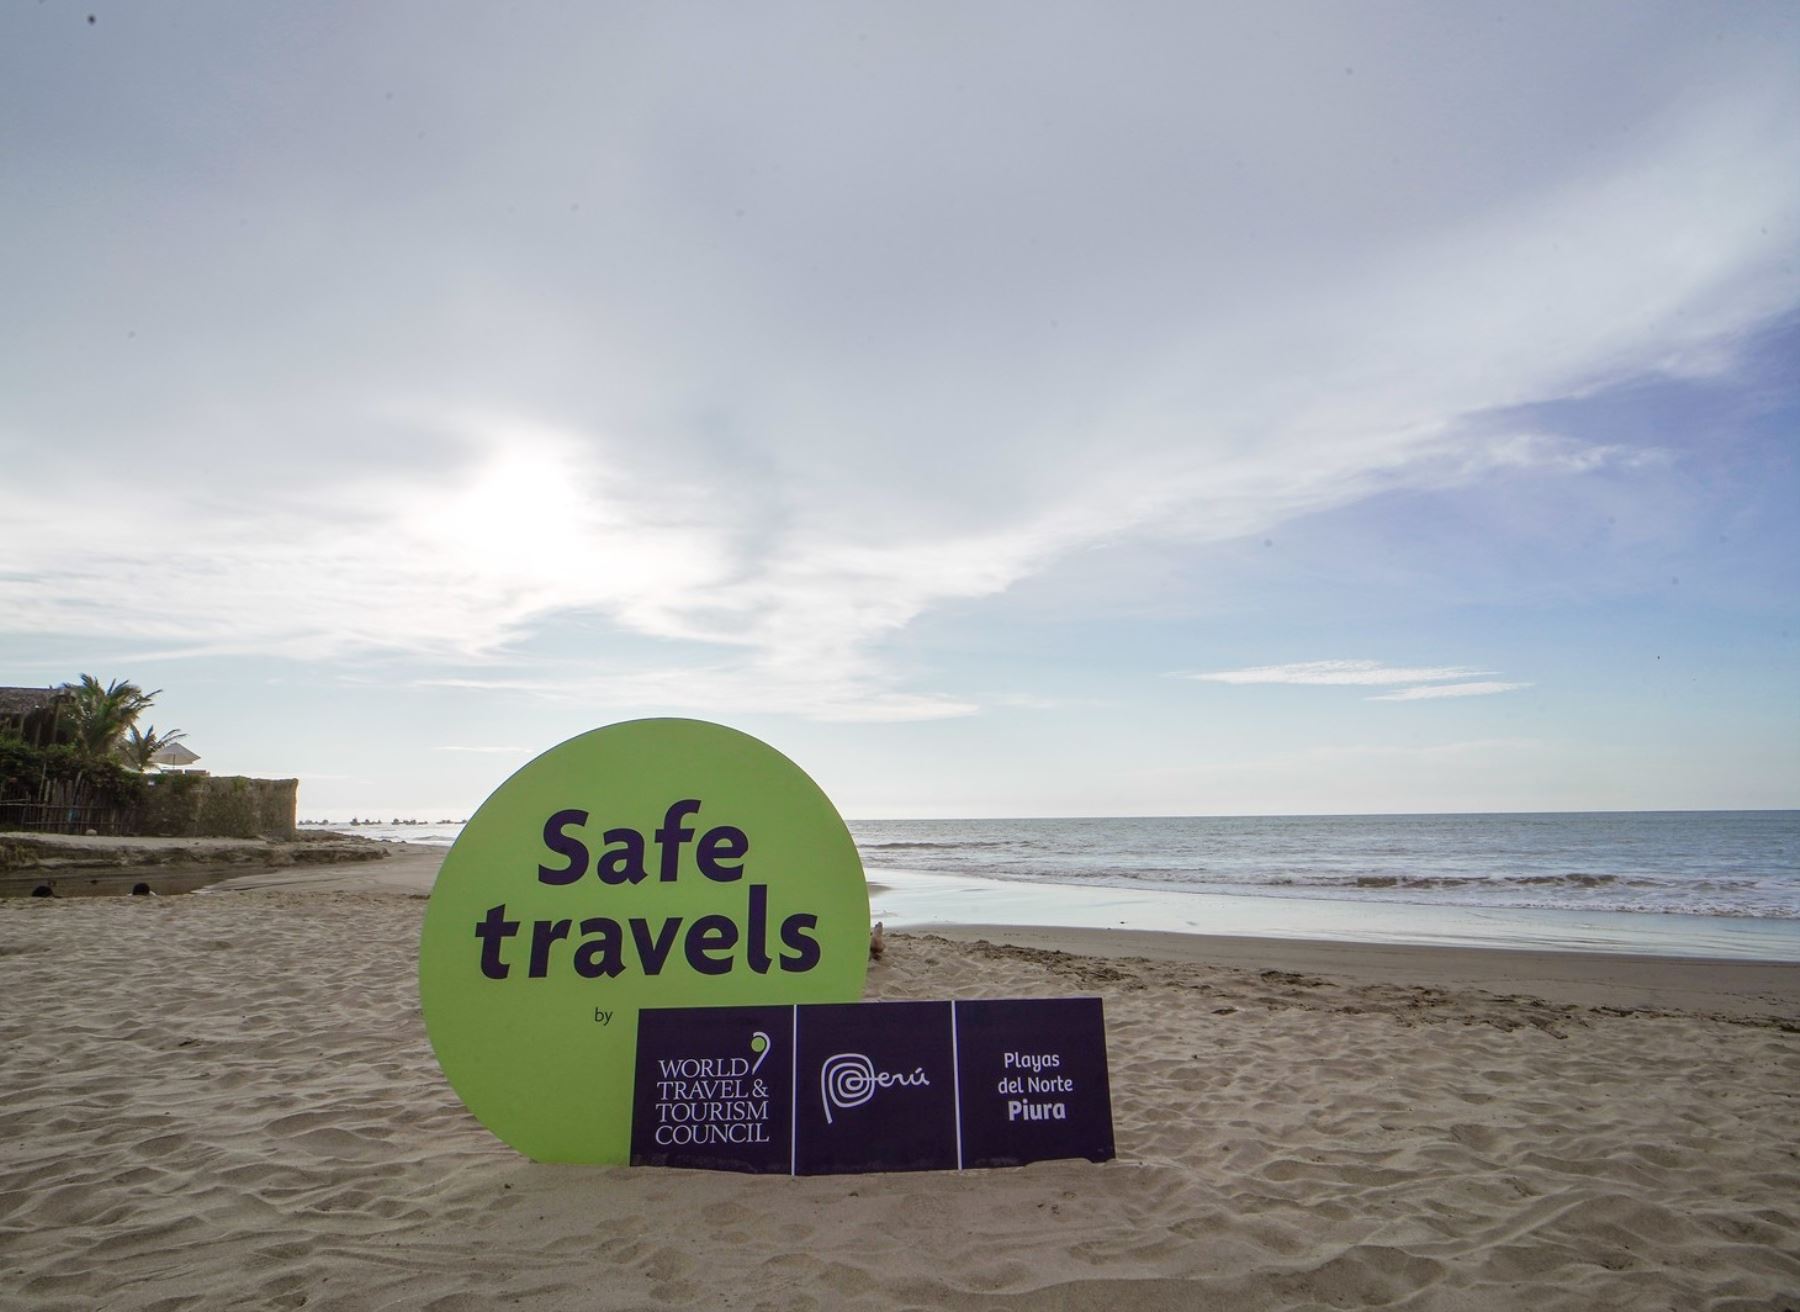 Máncora, Vichayito y otras paradisiacas playas de Piura recibieron de parte del Mincetur el distintivo Safe Travels, que las reconoce como destinos seguros ante el covid-19.